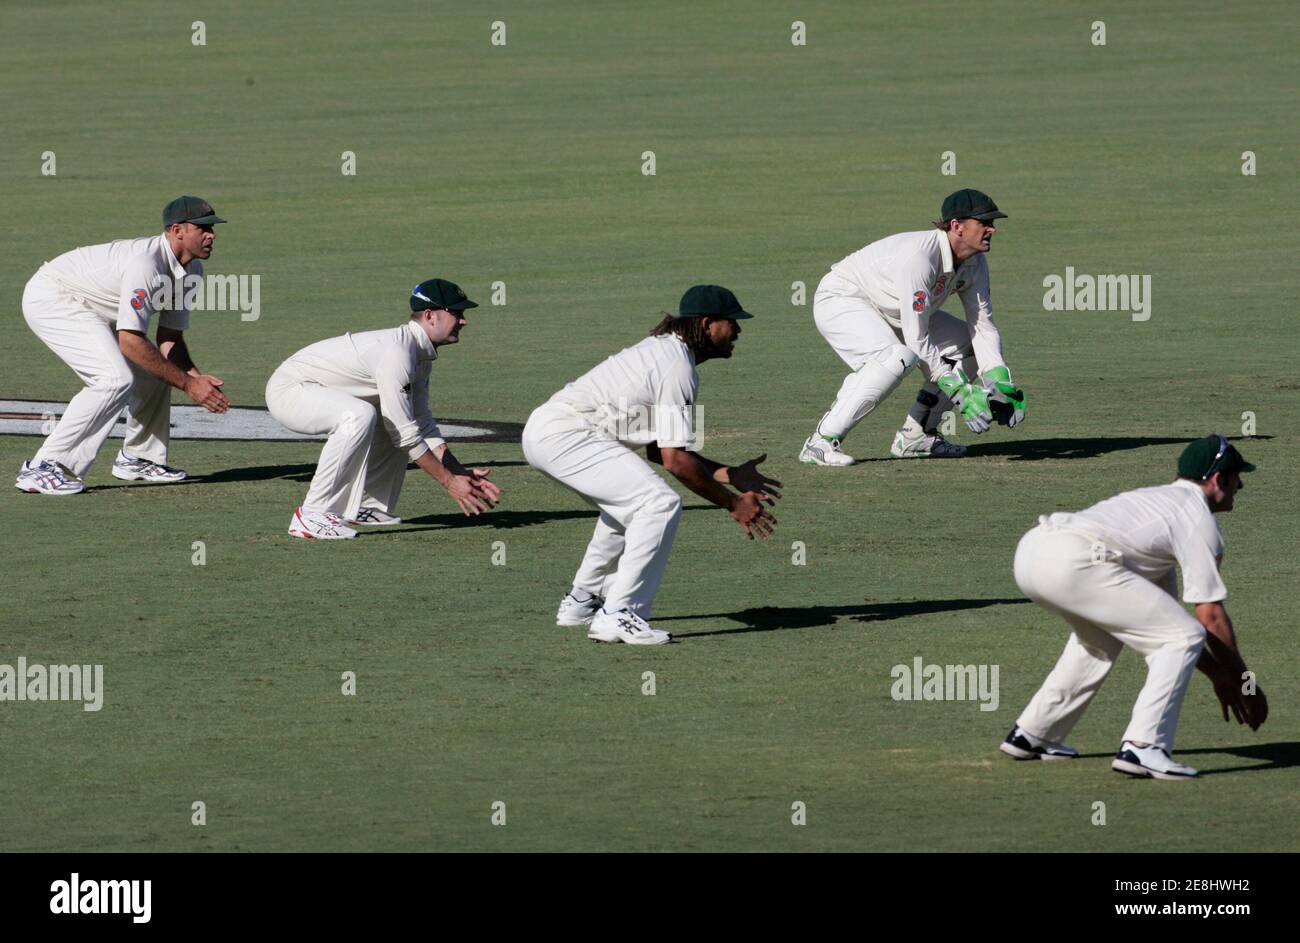 Australien (L-R) Matthew Hayden, Michael Clarke, Andrew Symonds, Adam Gilchrist und Michael Hussey in der rutscht während des vierten Tages der ihre vierte und letzte Test-Cricket-Match gegen Indien an der Adelaide Oval 27. Januar 2008 warten. REUTERS / Willen Burgess (Australien) Stockfoto